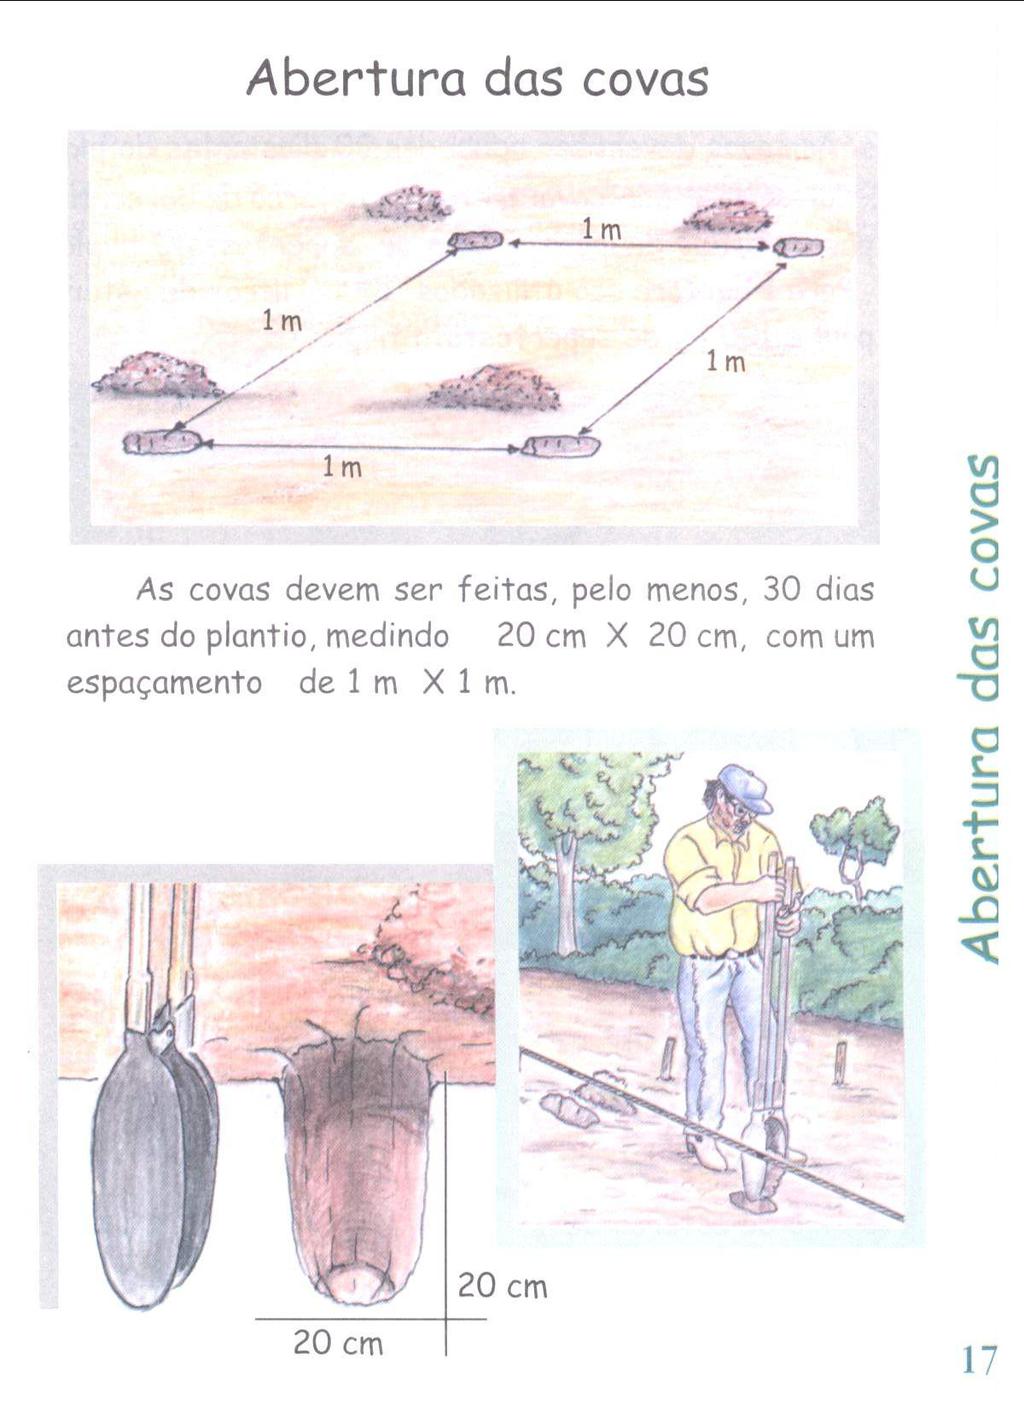 Abertura das covas im 1m / / As covas devem ser feitas, pelo menos, 30 dias untes do plantio, medindo 20 cm